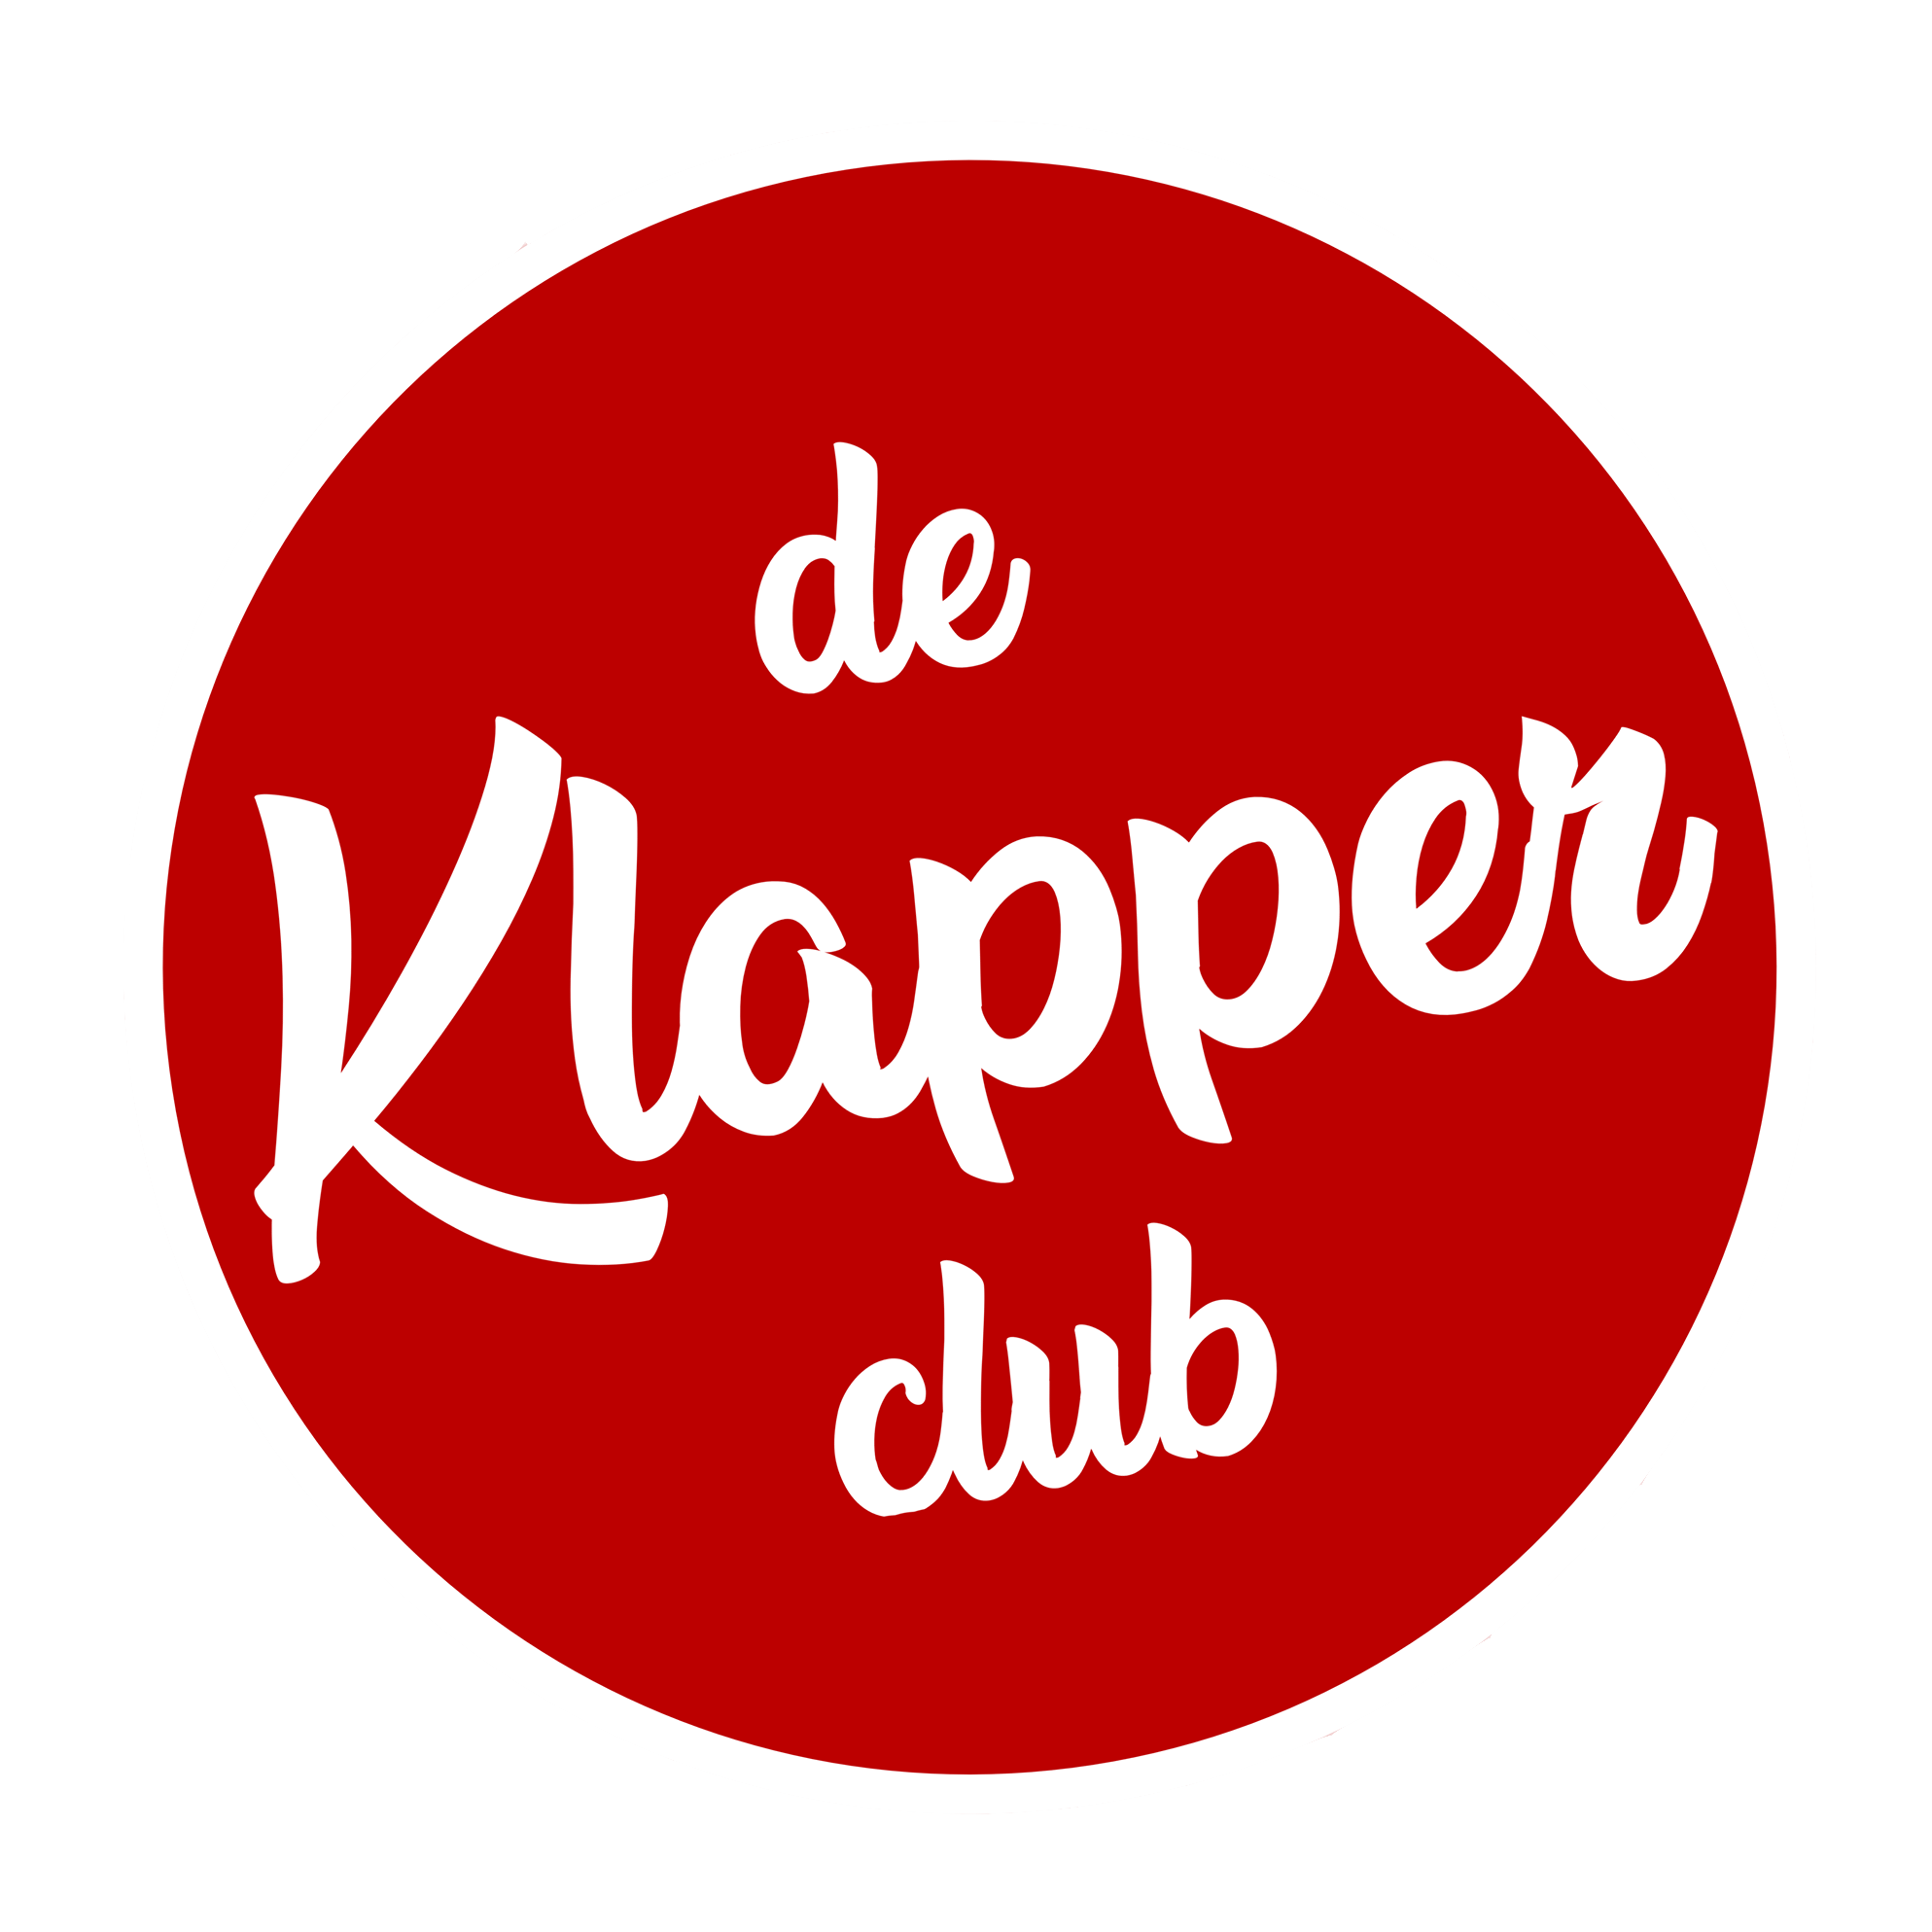 de Klapper Club